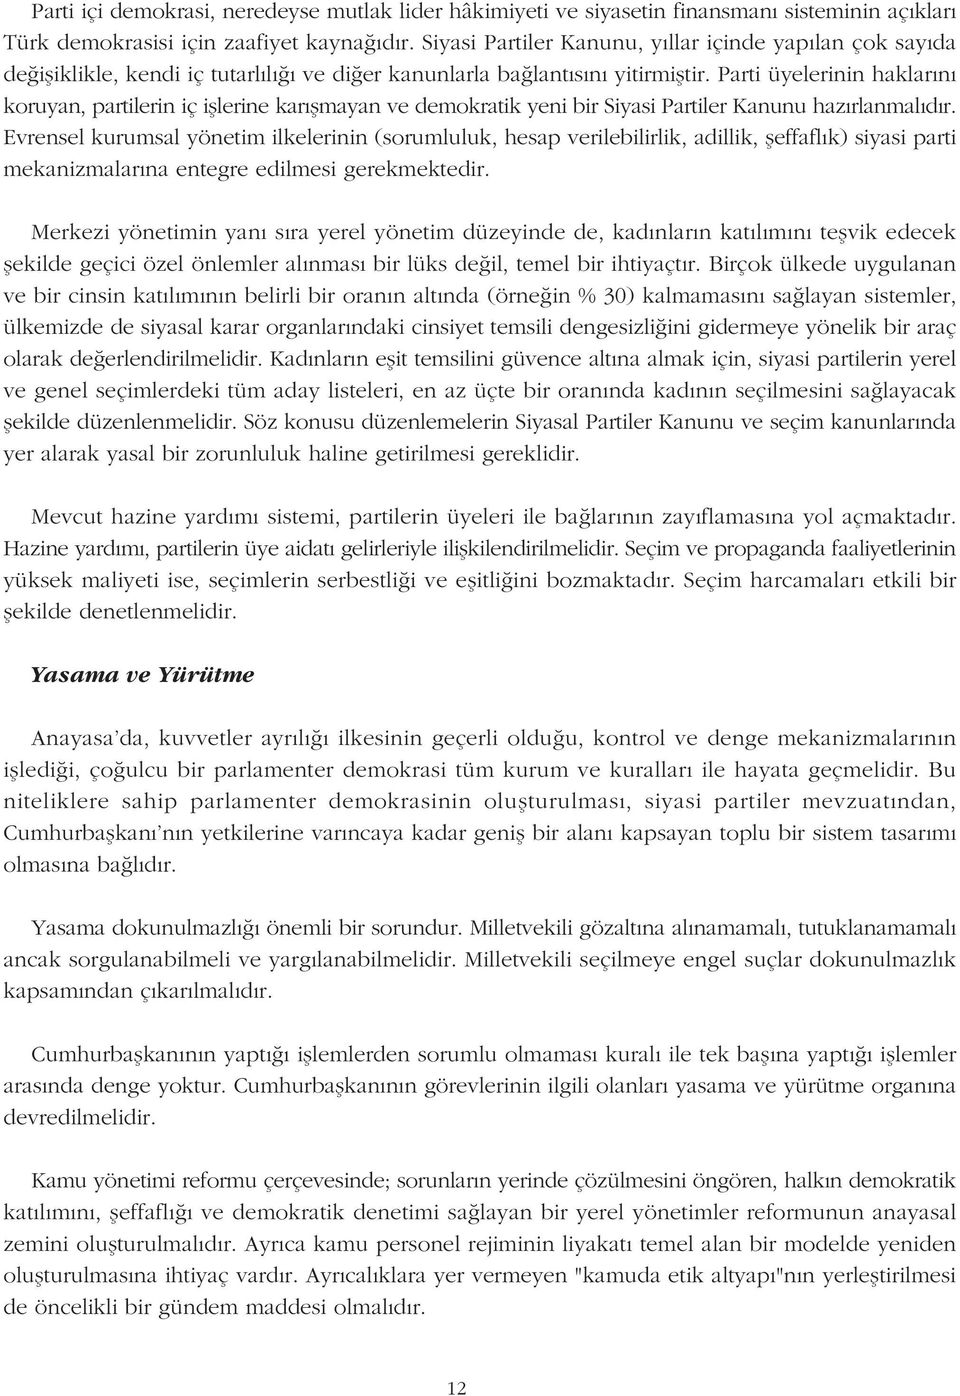 Parti üyelerinin haklarýný koruyan, partilerin iç iþlerine karýþmayan ve demokratik yeni bir Siyasi Partiler Kanunu hazýrlanmalýdýr.